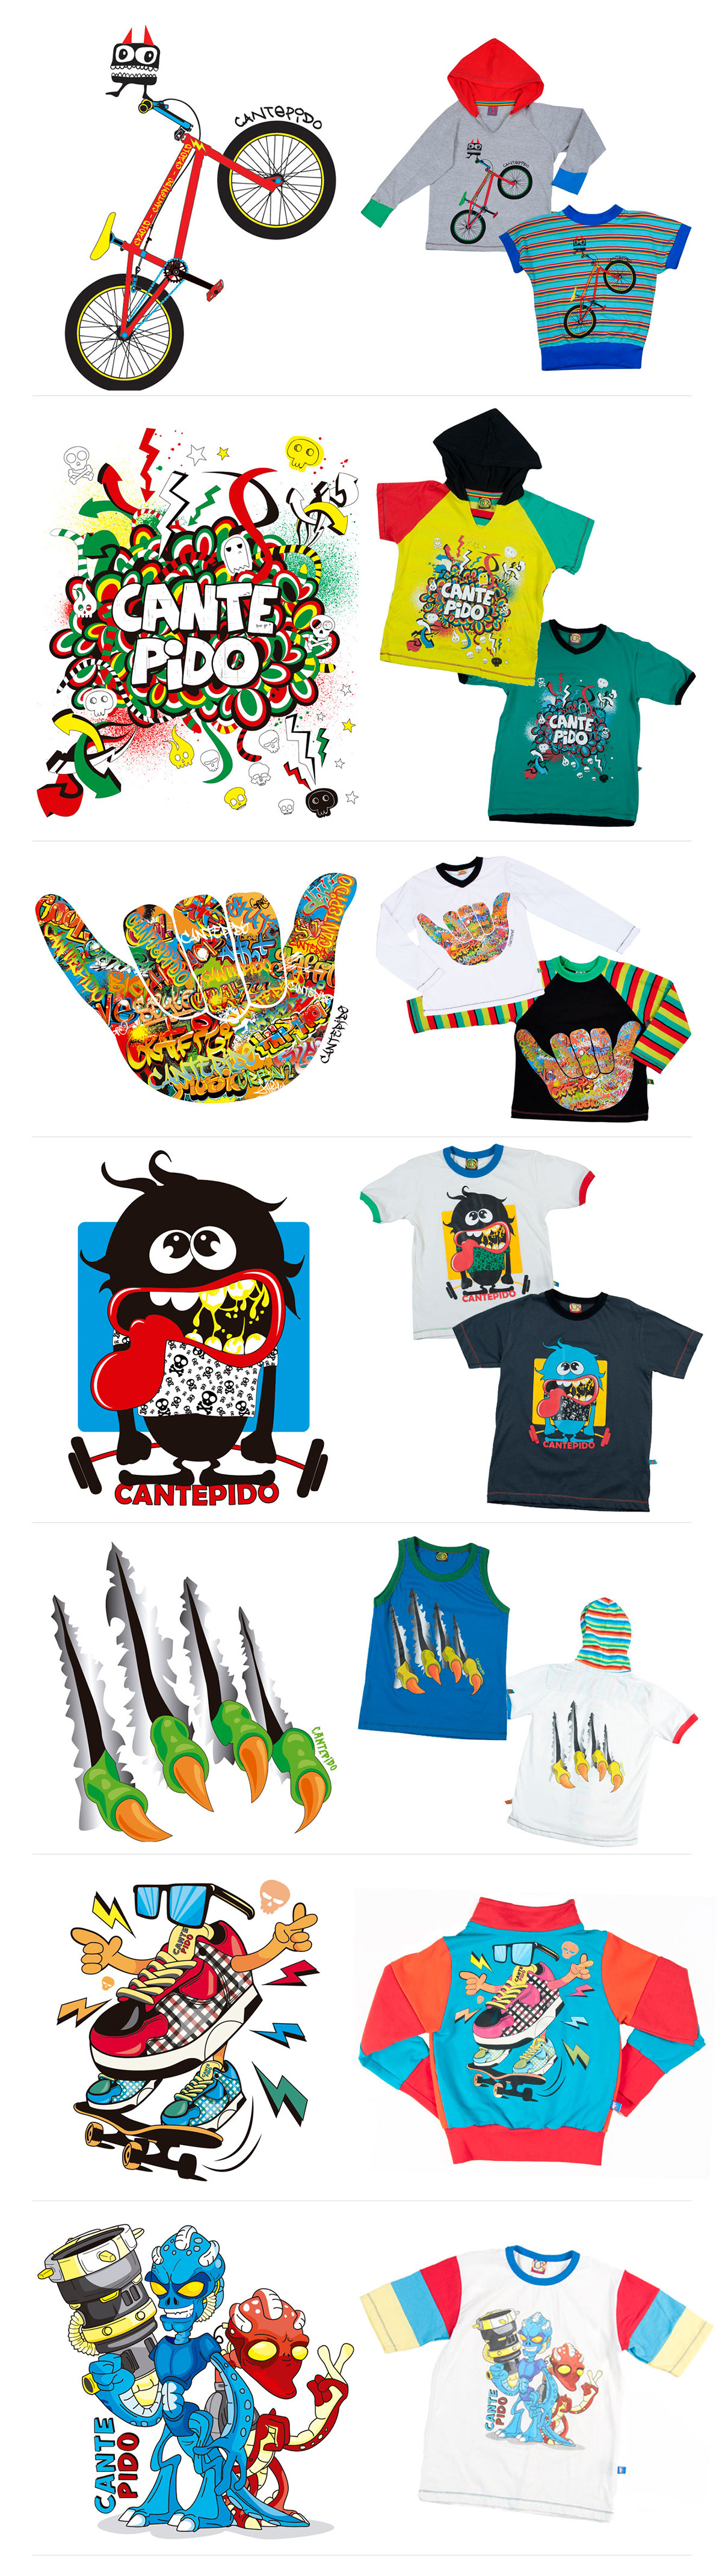 indumentaria infantil indumentaria infantil Estampas estampado bordado Ropa niños diseño ilustracion dibujos color